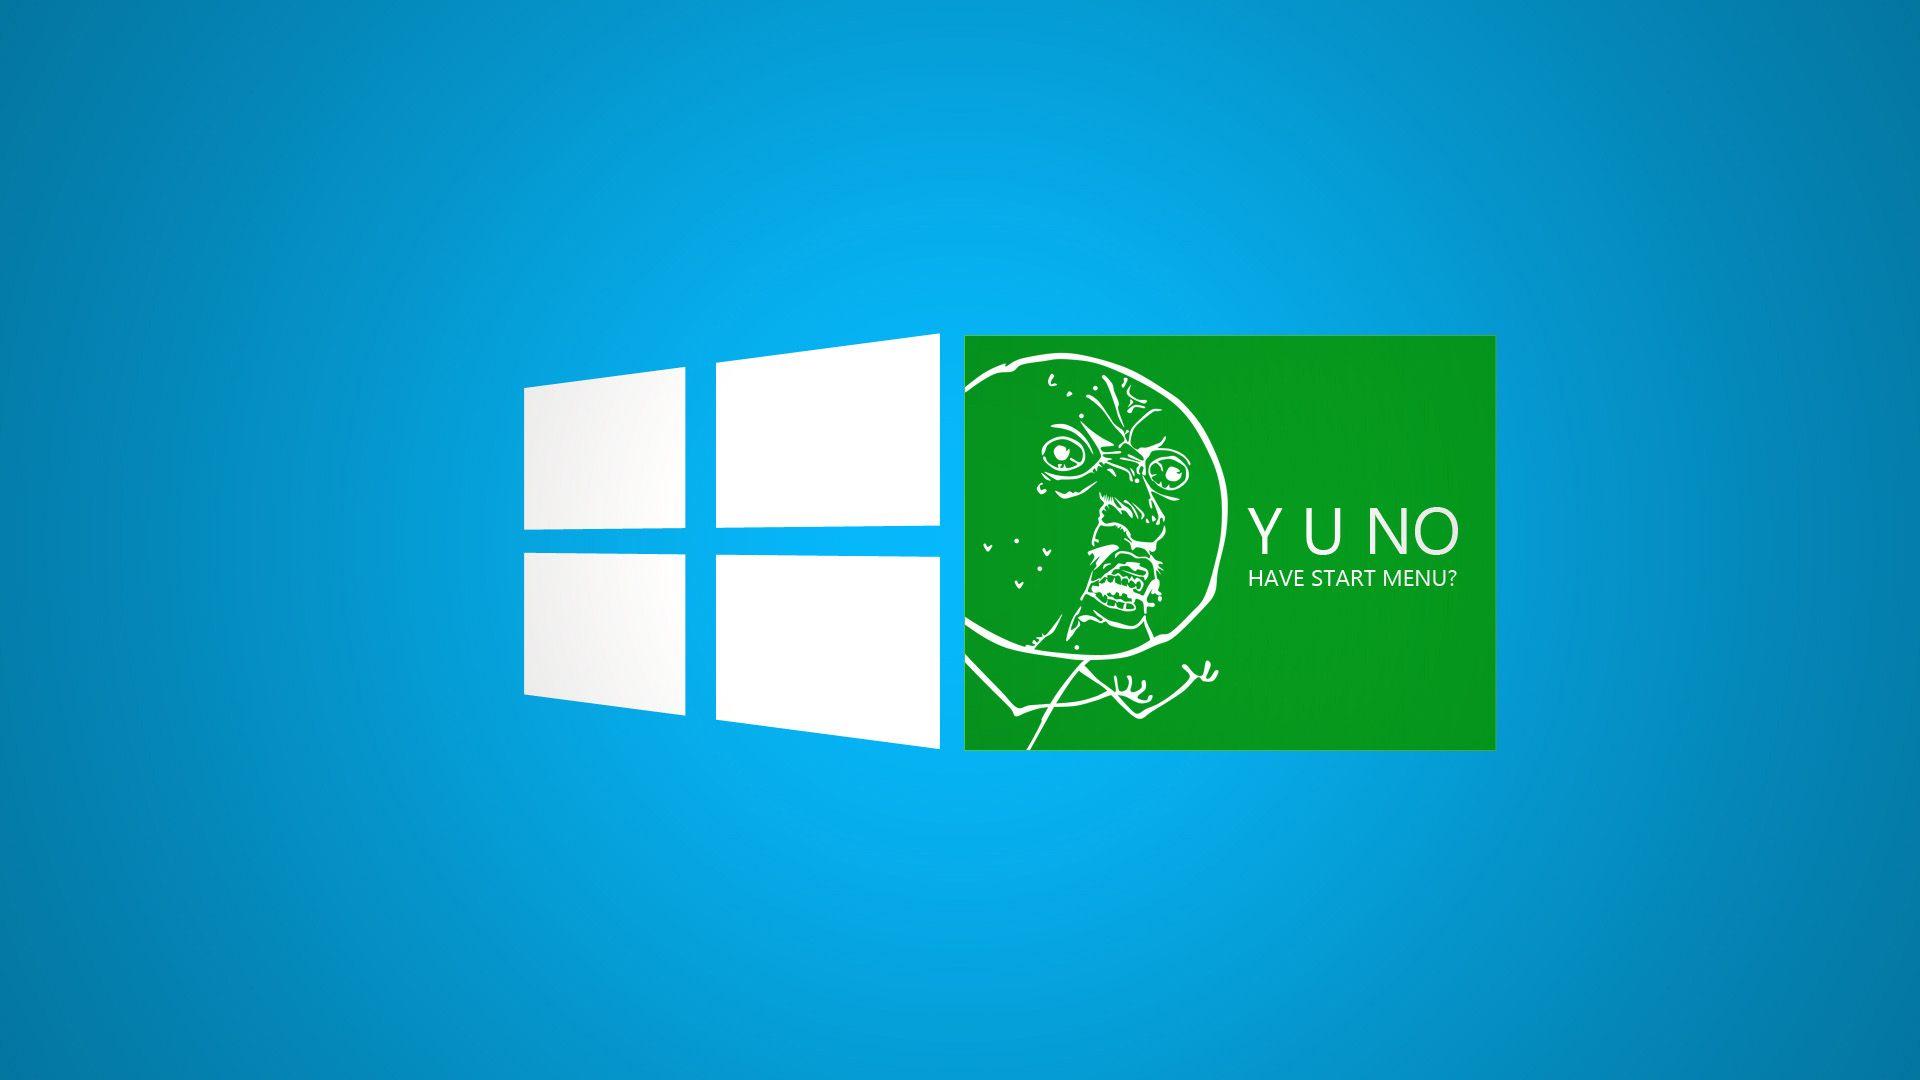 1920x1080 Hình nền Windows 8 Meme vui nhộn màu xanh lá cây.  nhãn hiệu và logo.  Hình nền